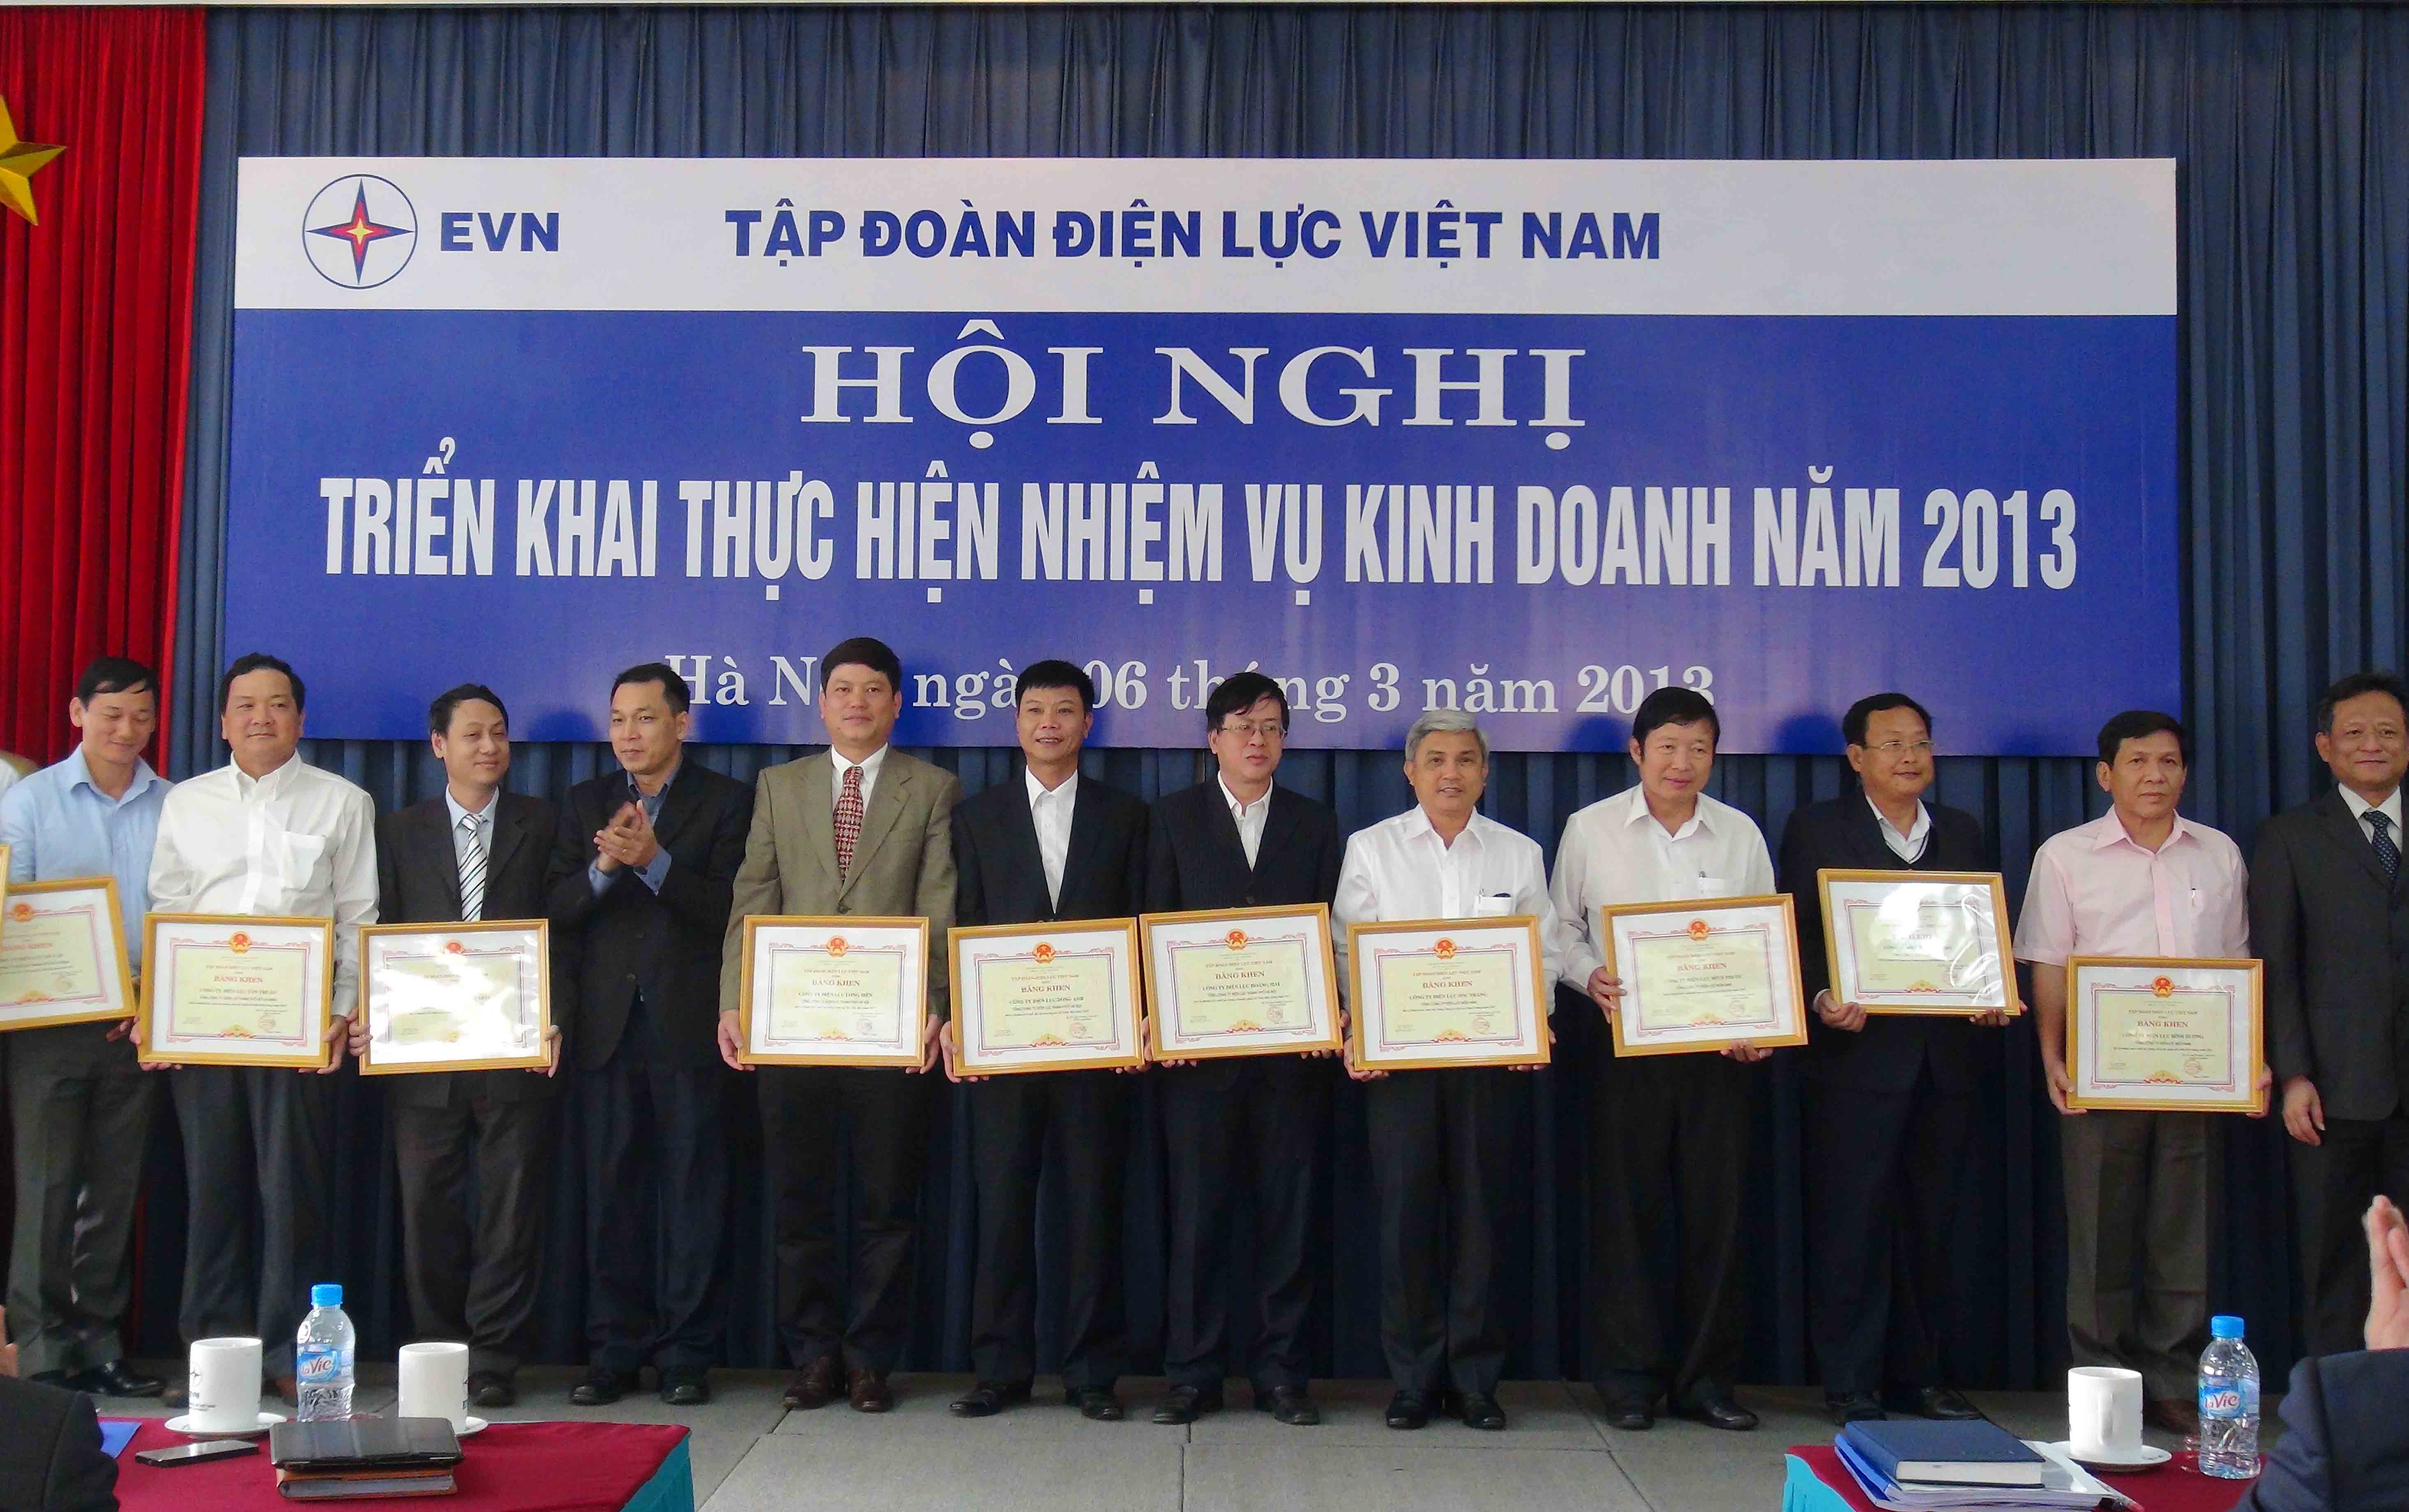 Phó TGĐ Đặng Hoàng An và Phó TGĐ Nguyễn Tấn Lộc trao bằng khen cho các  đơn vị thực hiện tốt nhiệm vụ SXKD năm 2012 - Ảnh: T.Hà